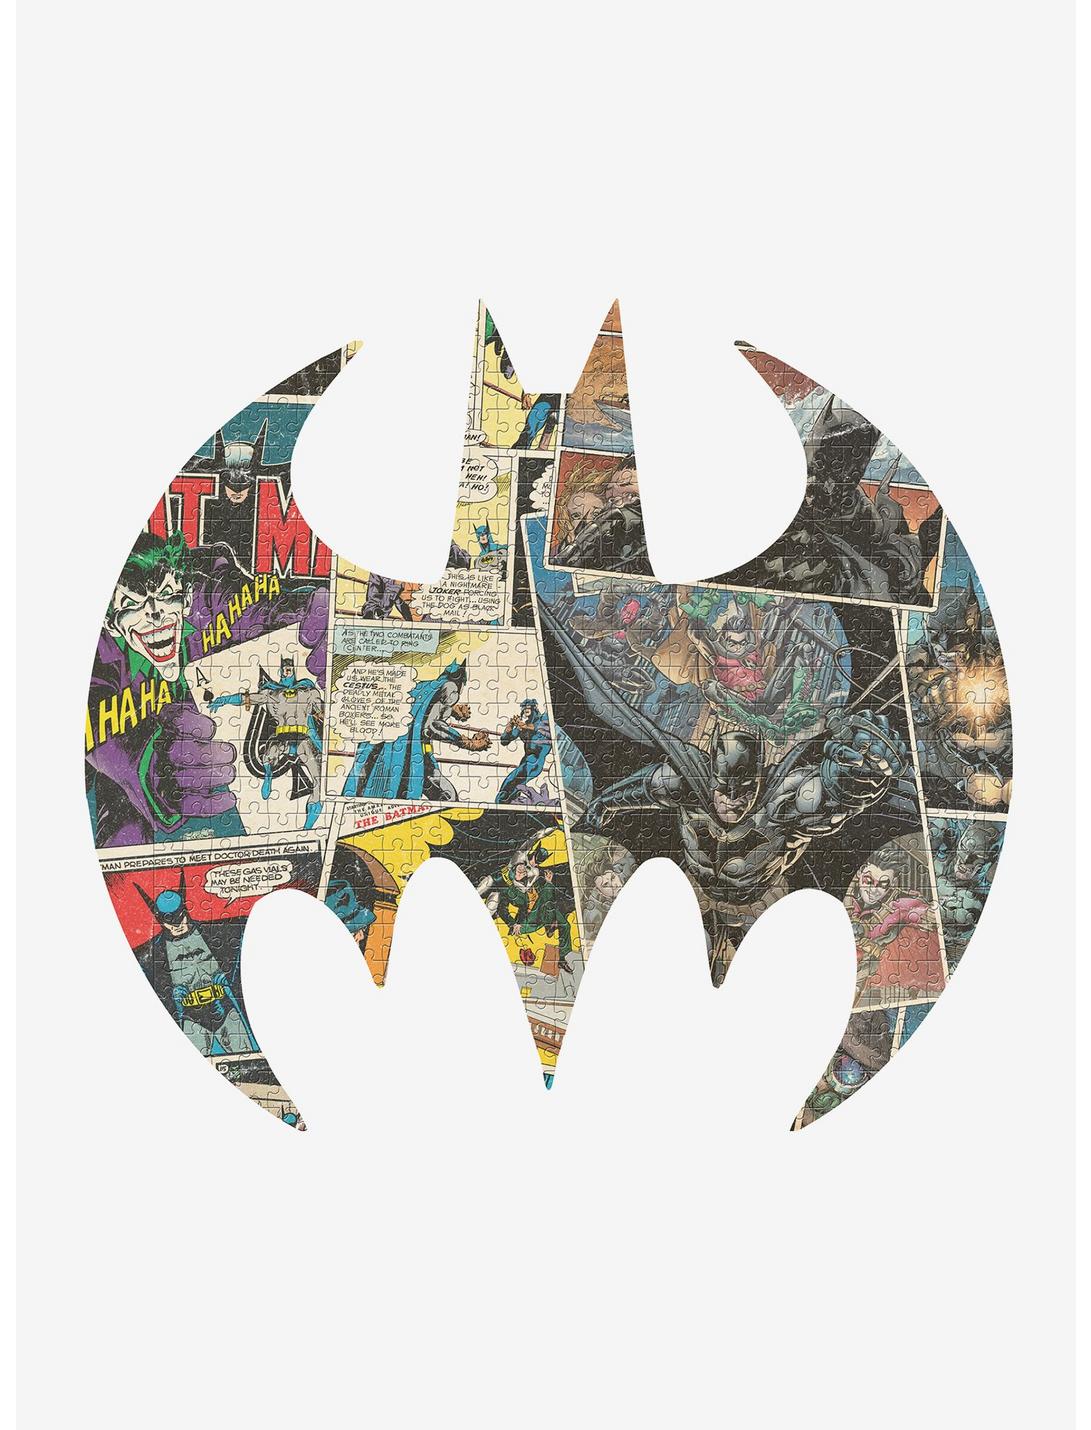 DC Comics Batman Comic Art Bat Symbol 750-Piece Puzzle and Tin, , hi-res